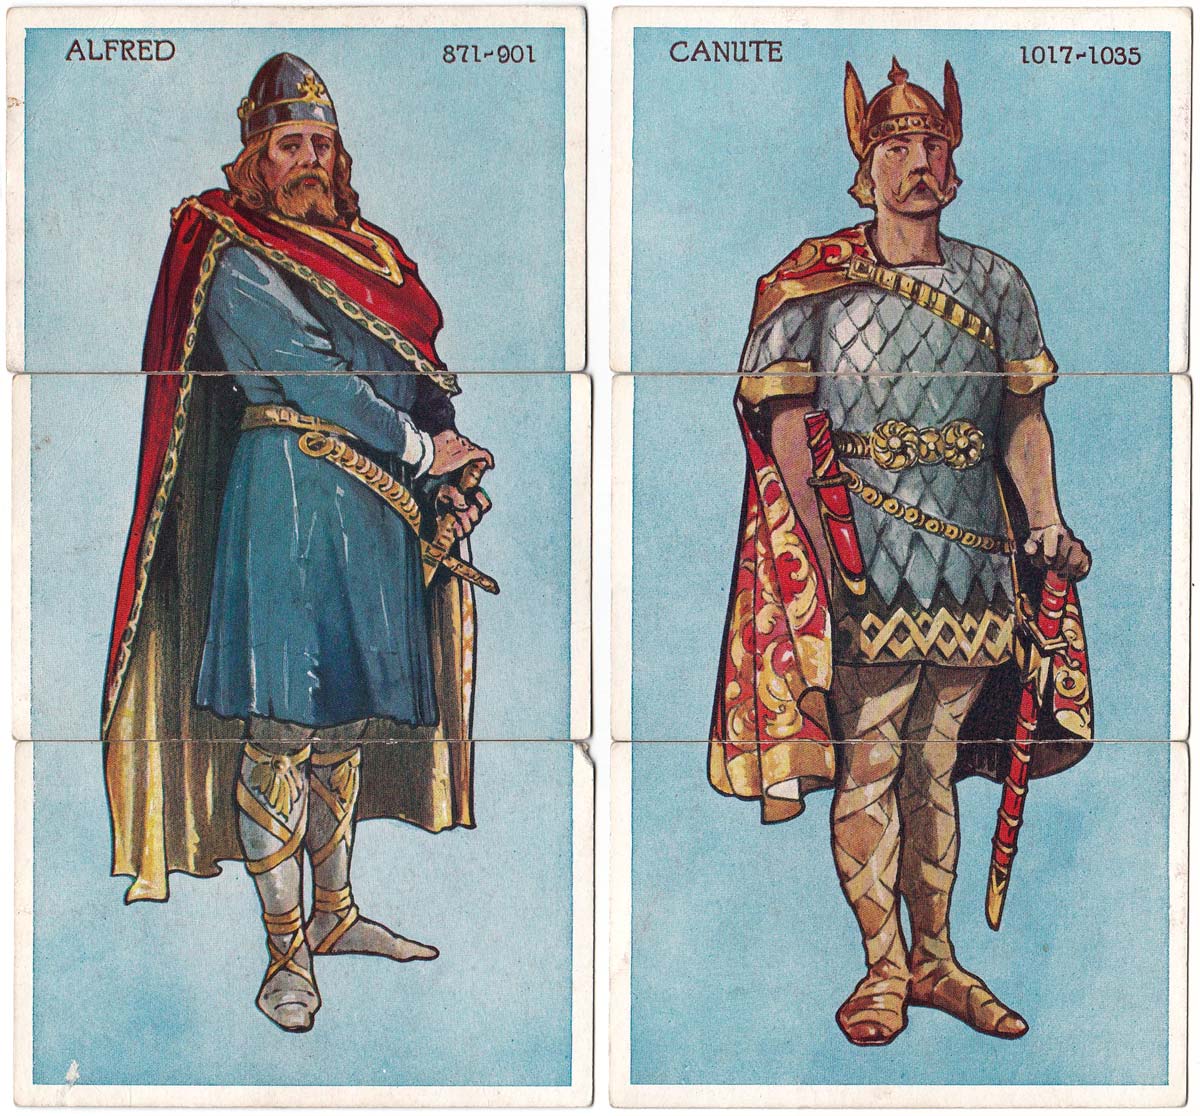 Kings & Queens of England Misfitz, c.1918